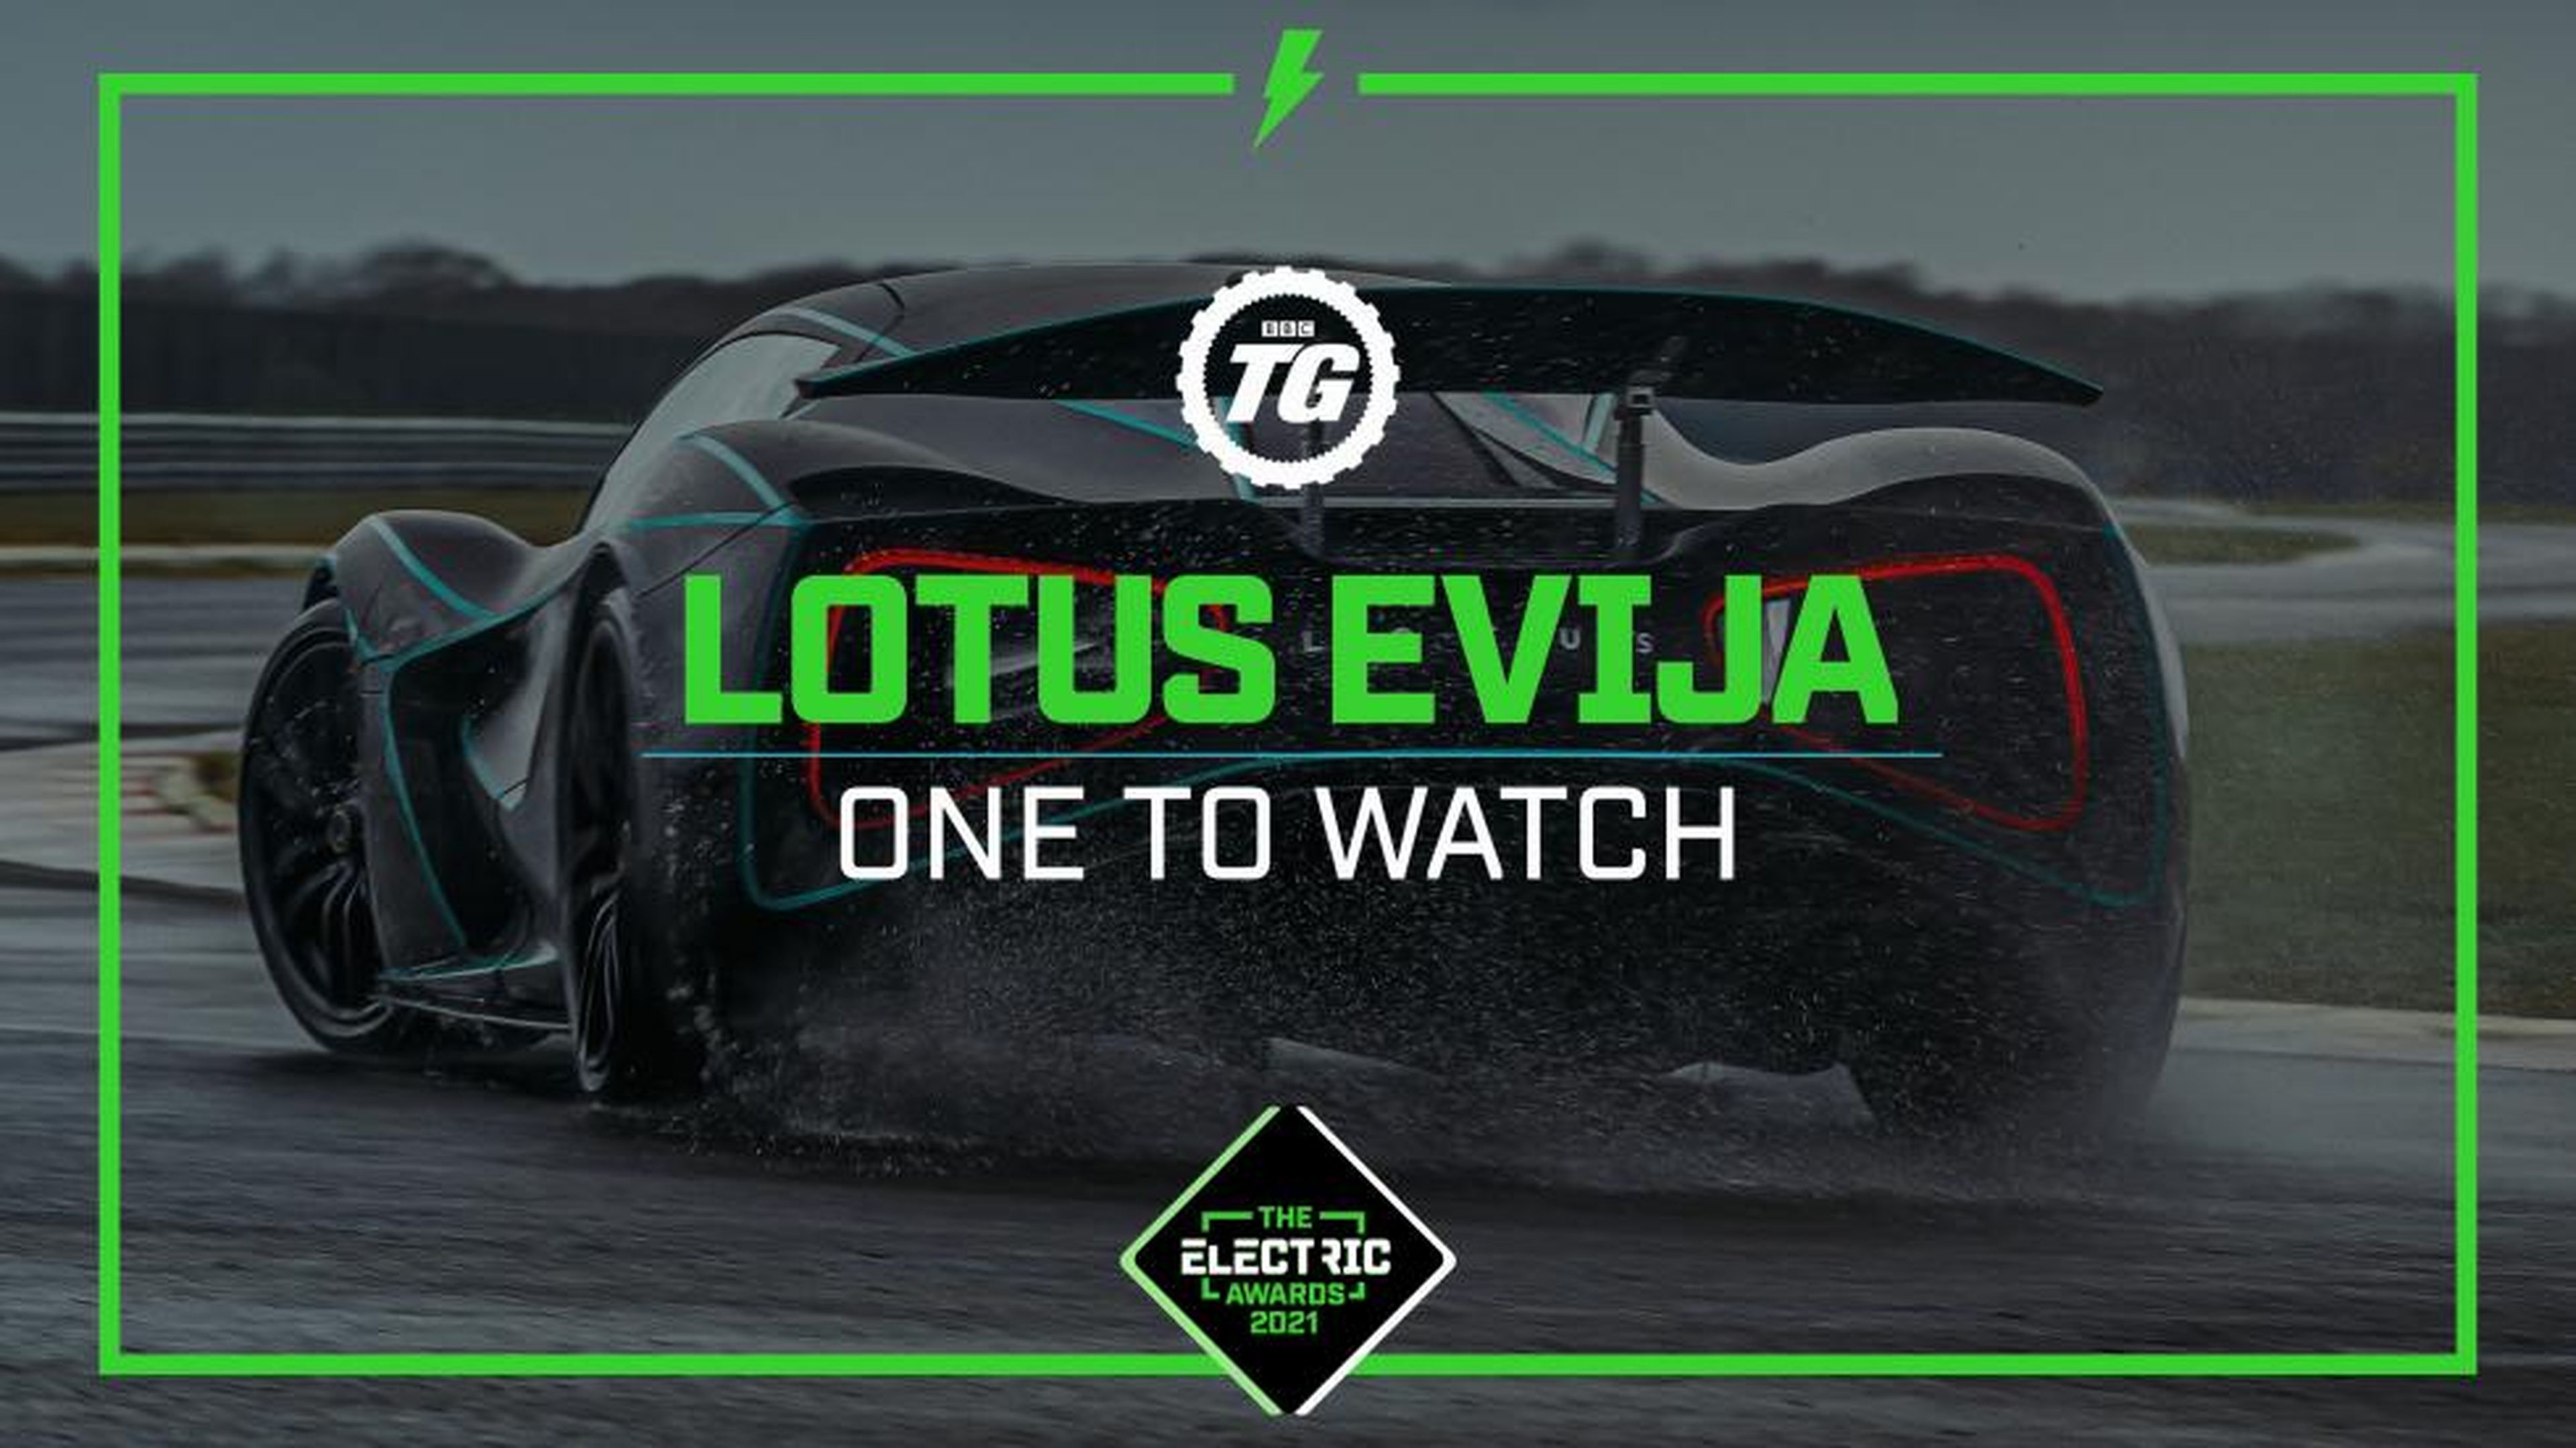 Top Gear Electric Awards: Lotus Evija